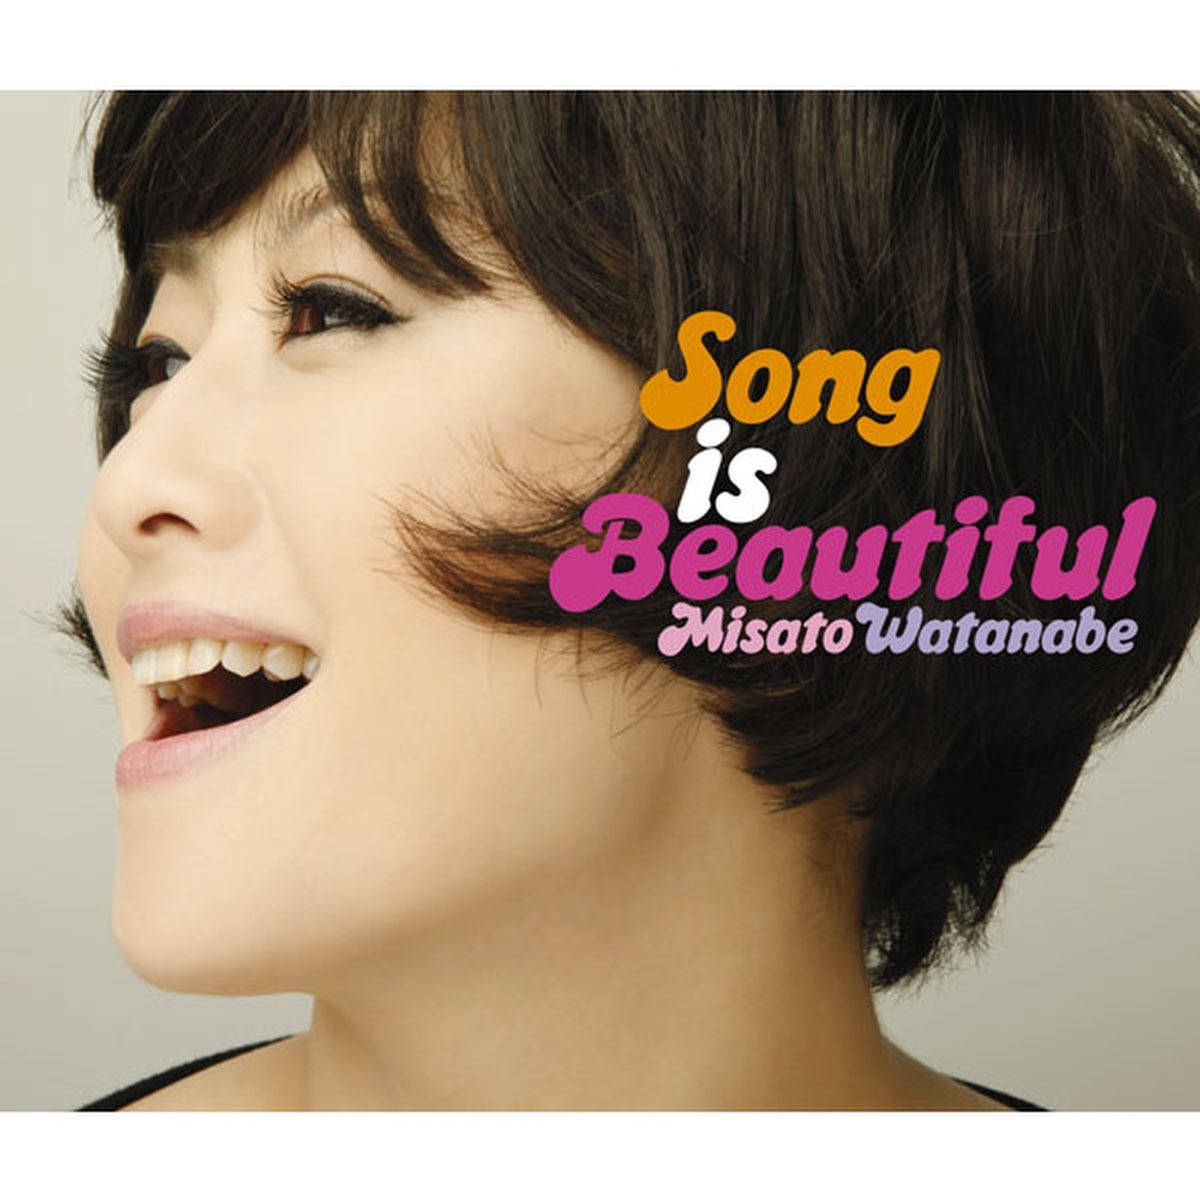 ソニーミュージック 渡辺美里 CD Song is Beautiful